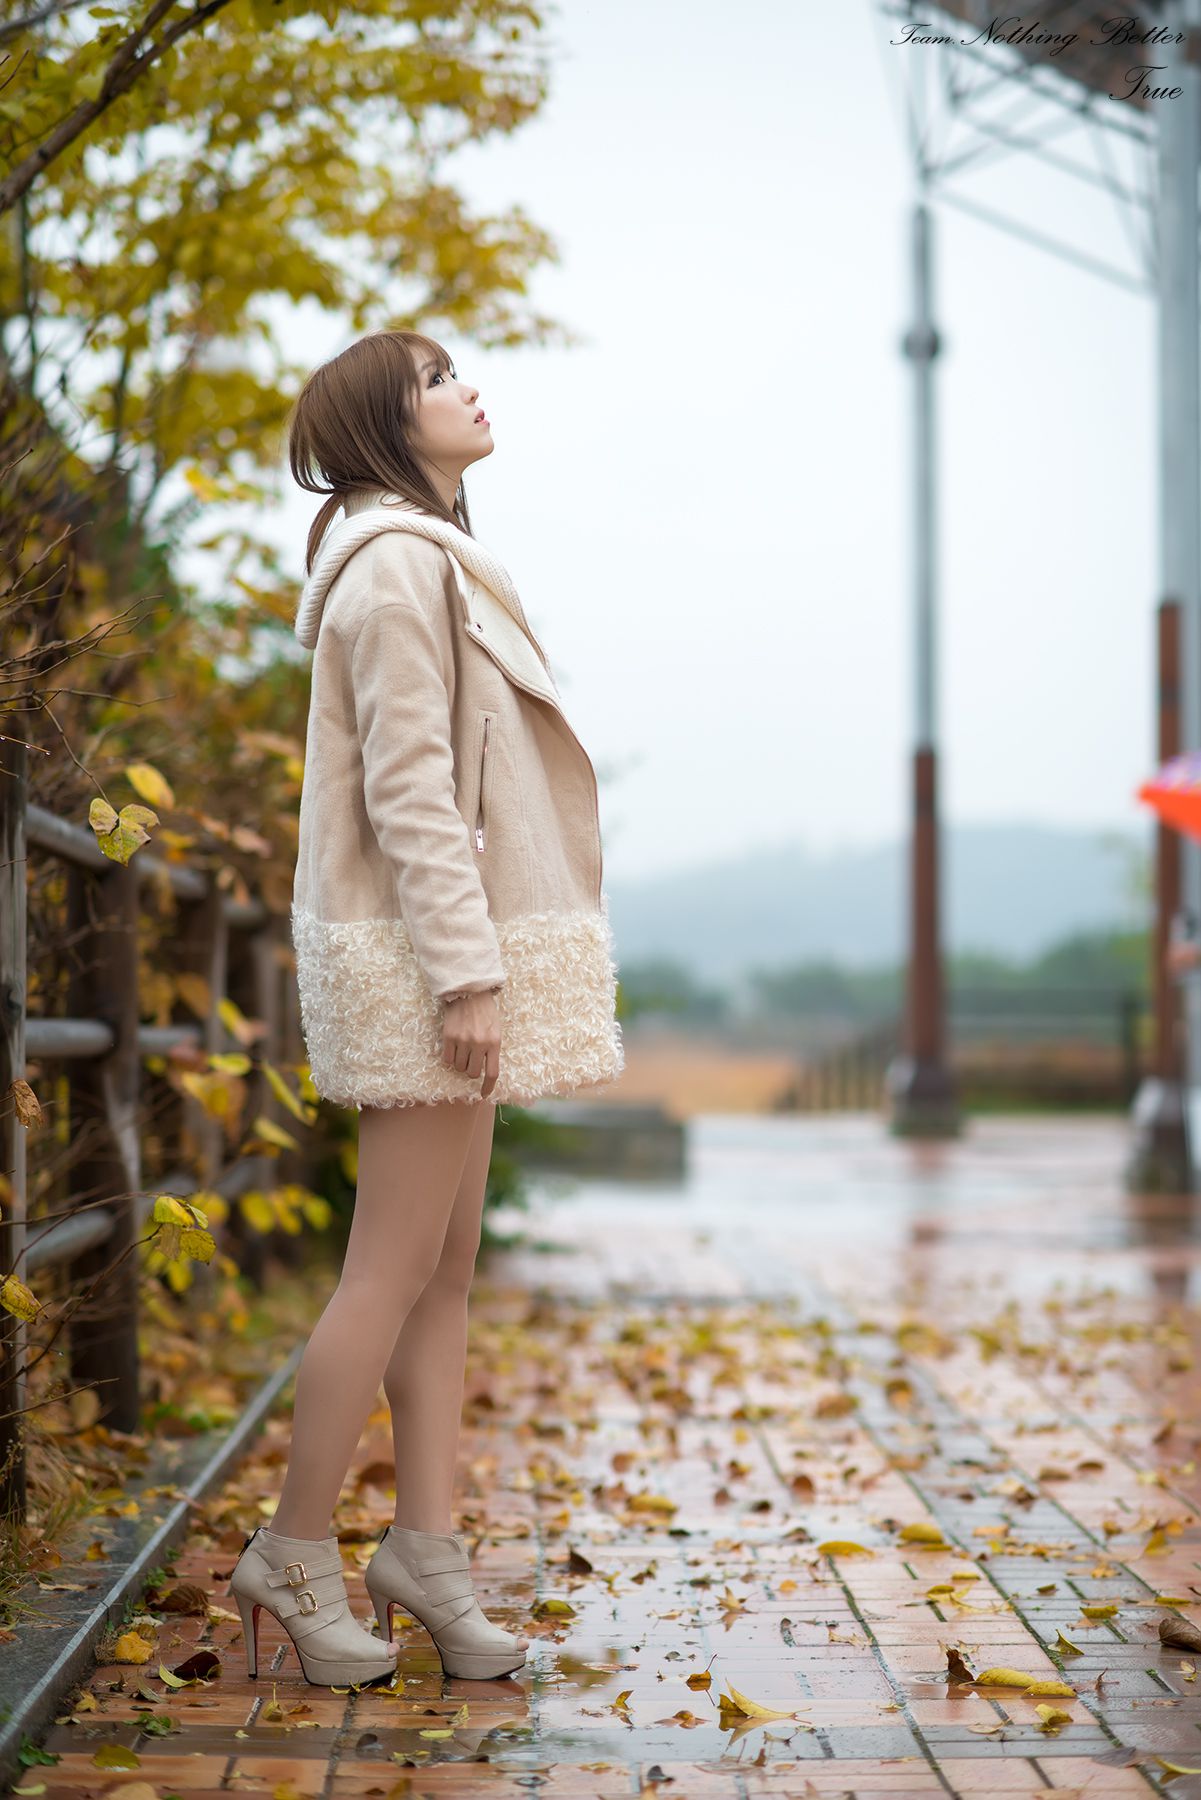 极品韩国美女李恩慧《下雨天街拍》  第2张